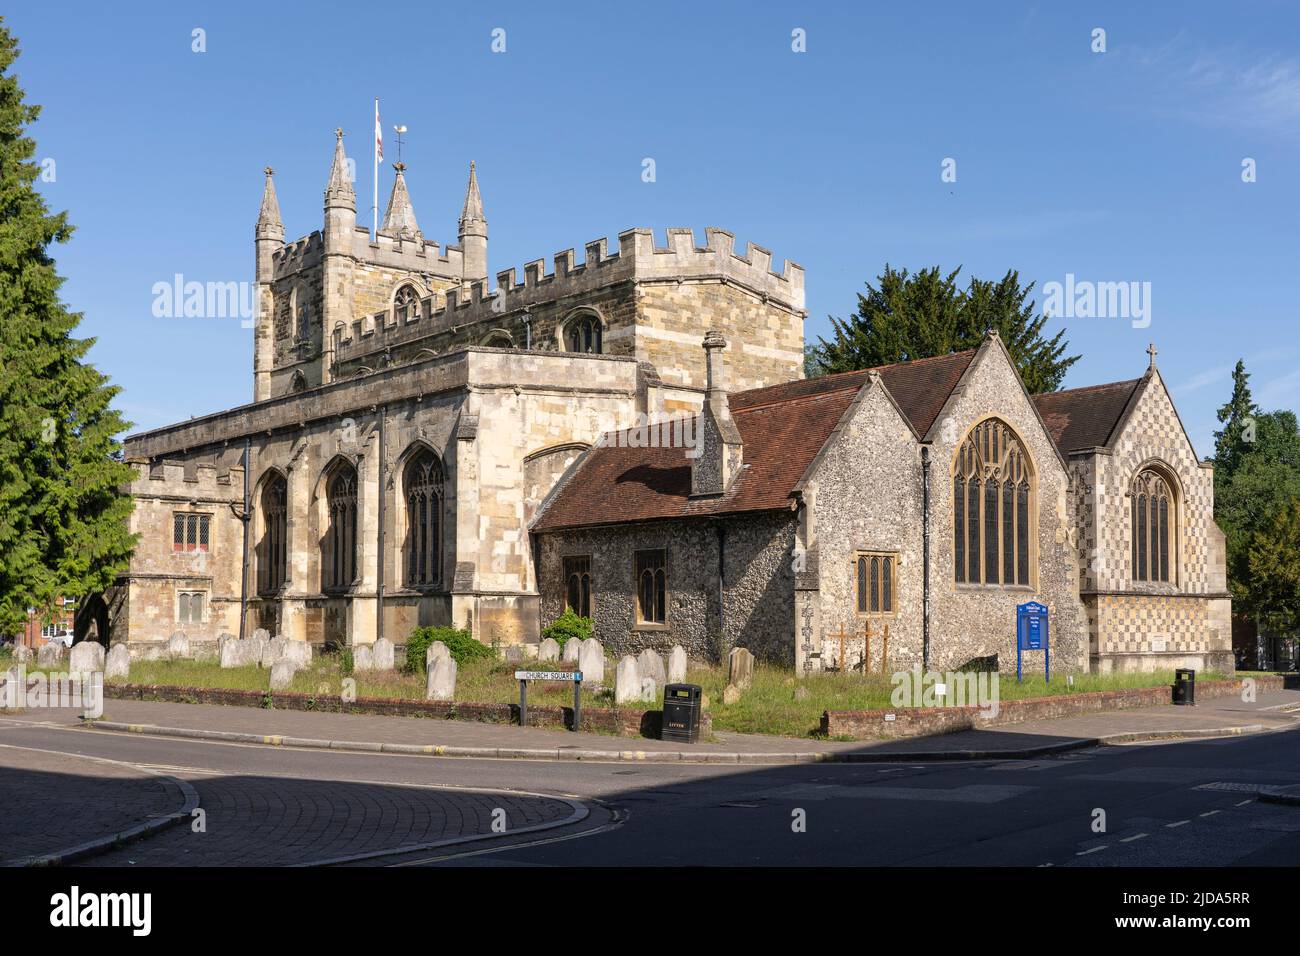 Iglesia de San Miguel, una iglesia parroquial anglicana construida de piedra y piedra, la iglesia más antigua de Basingstoke en un día de verano. Hampshire, Reino Unido Foto de stock